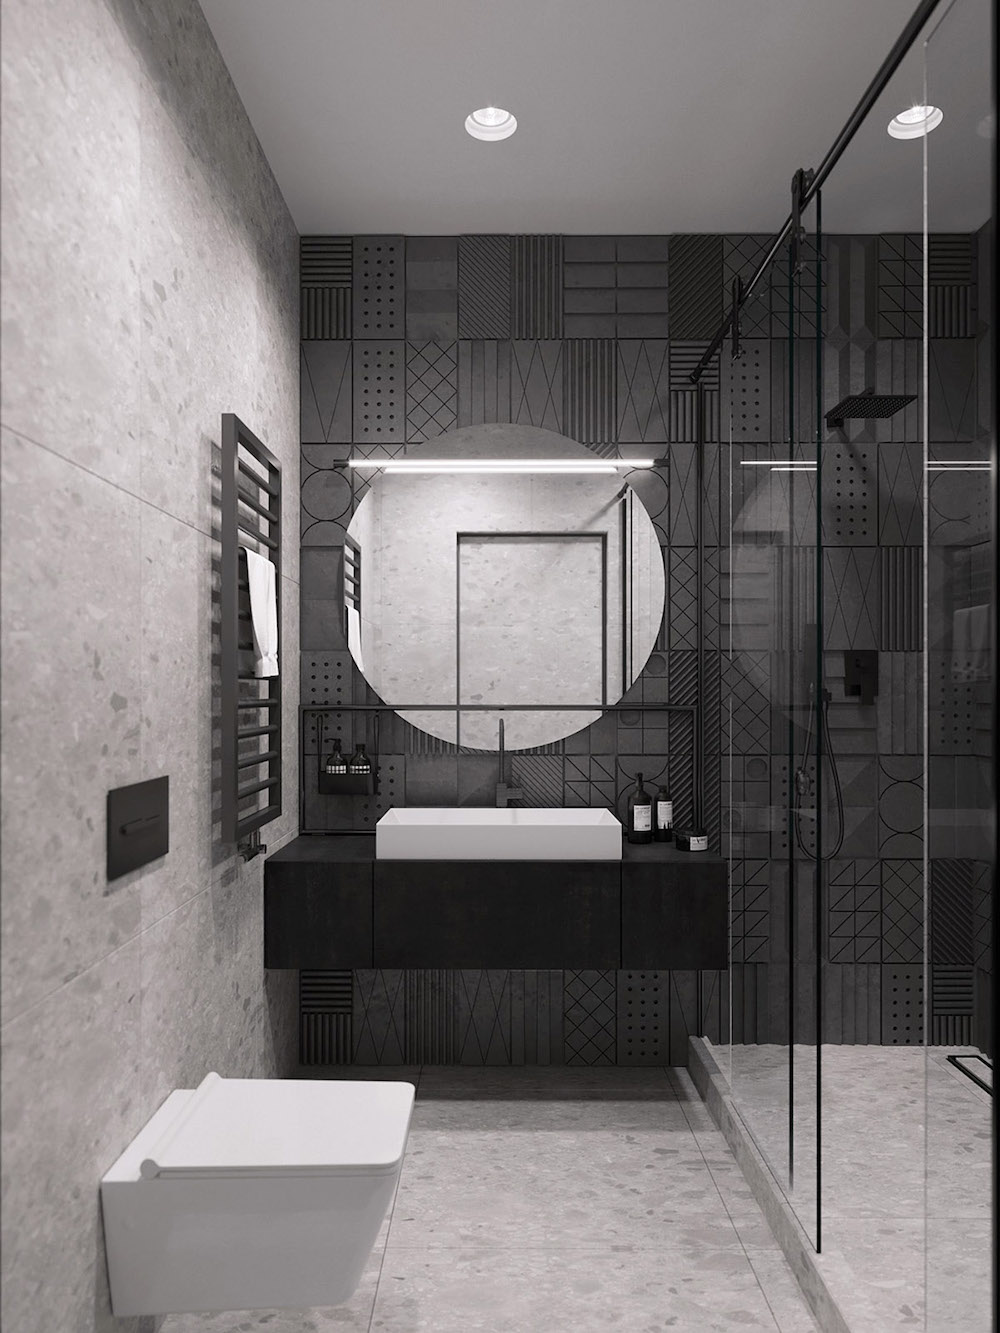 Desain interior kamar mandi